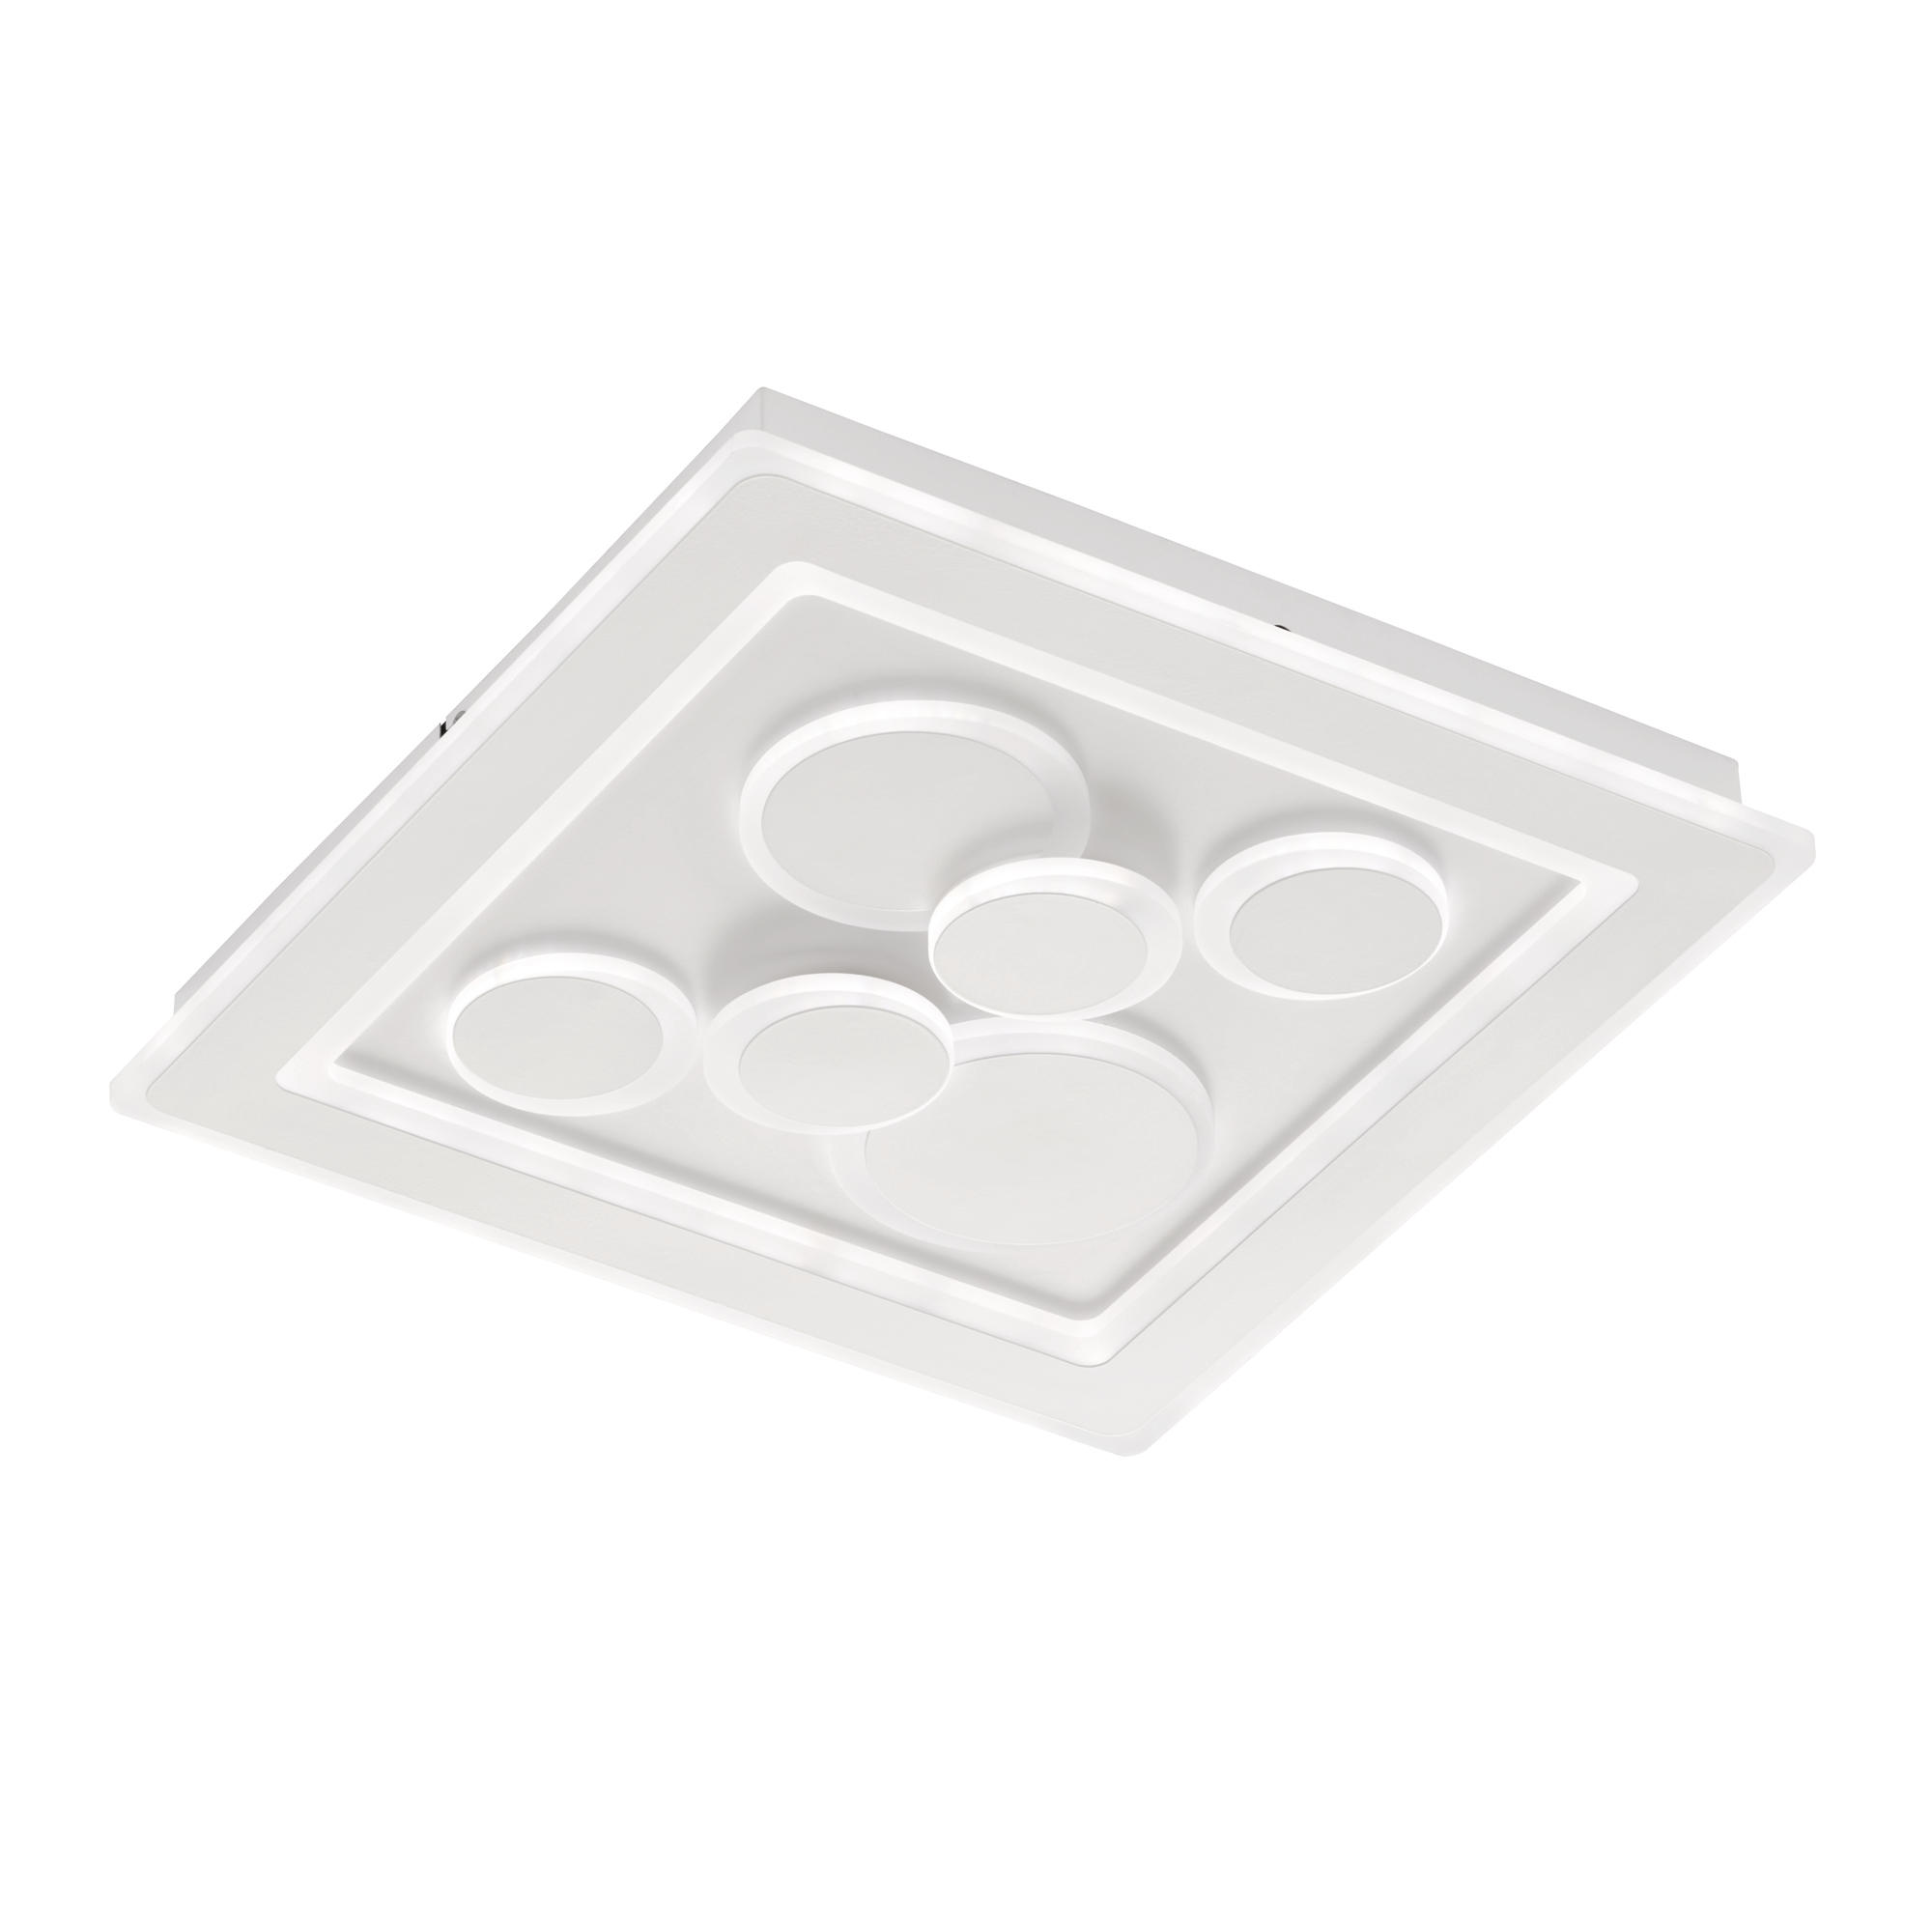 LED-DECKENLEUCHTE Ratio 50,1/50,1/5,3 cm   - Weiß, Design, Kunststoff (50,1/50,1/5,3cm) - Fischer & Honsel